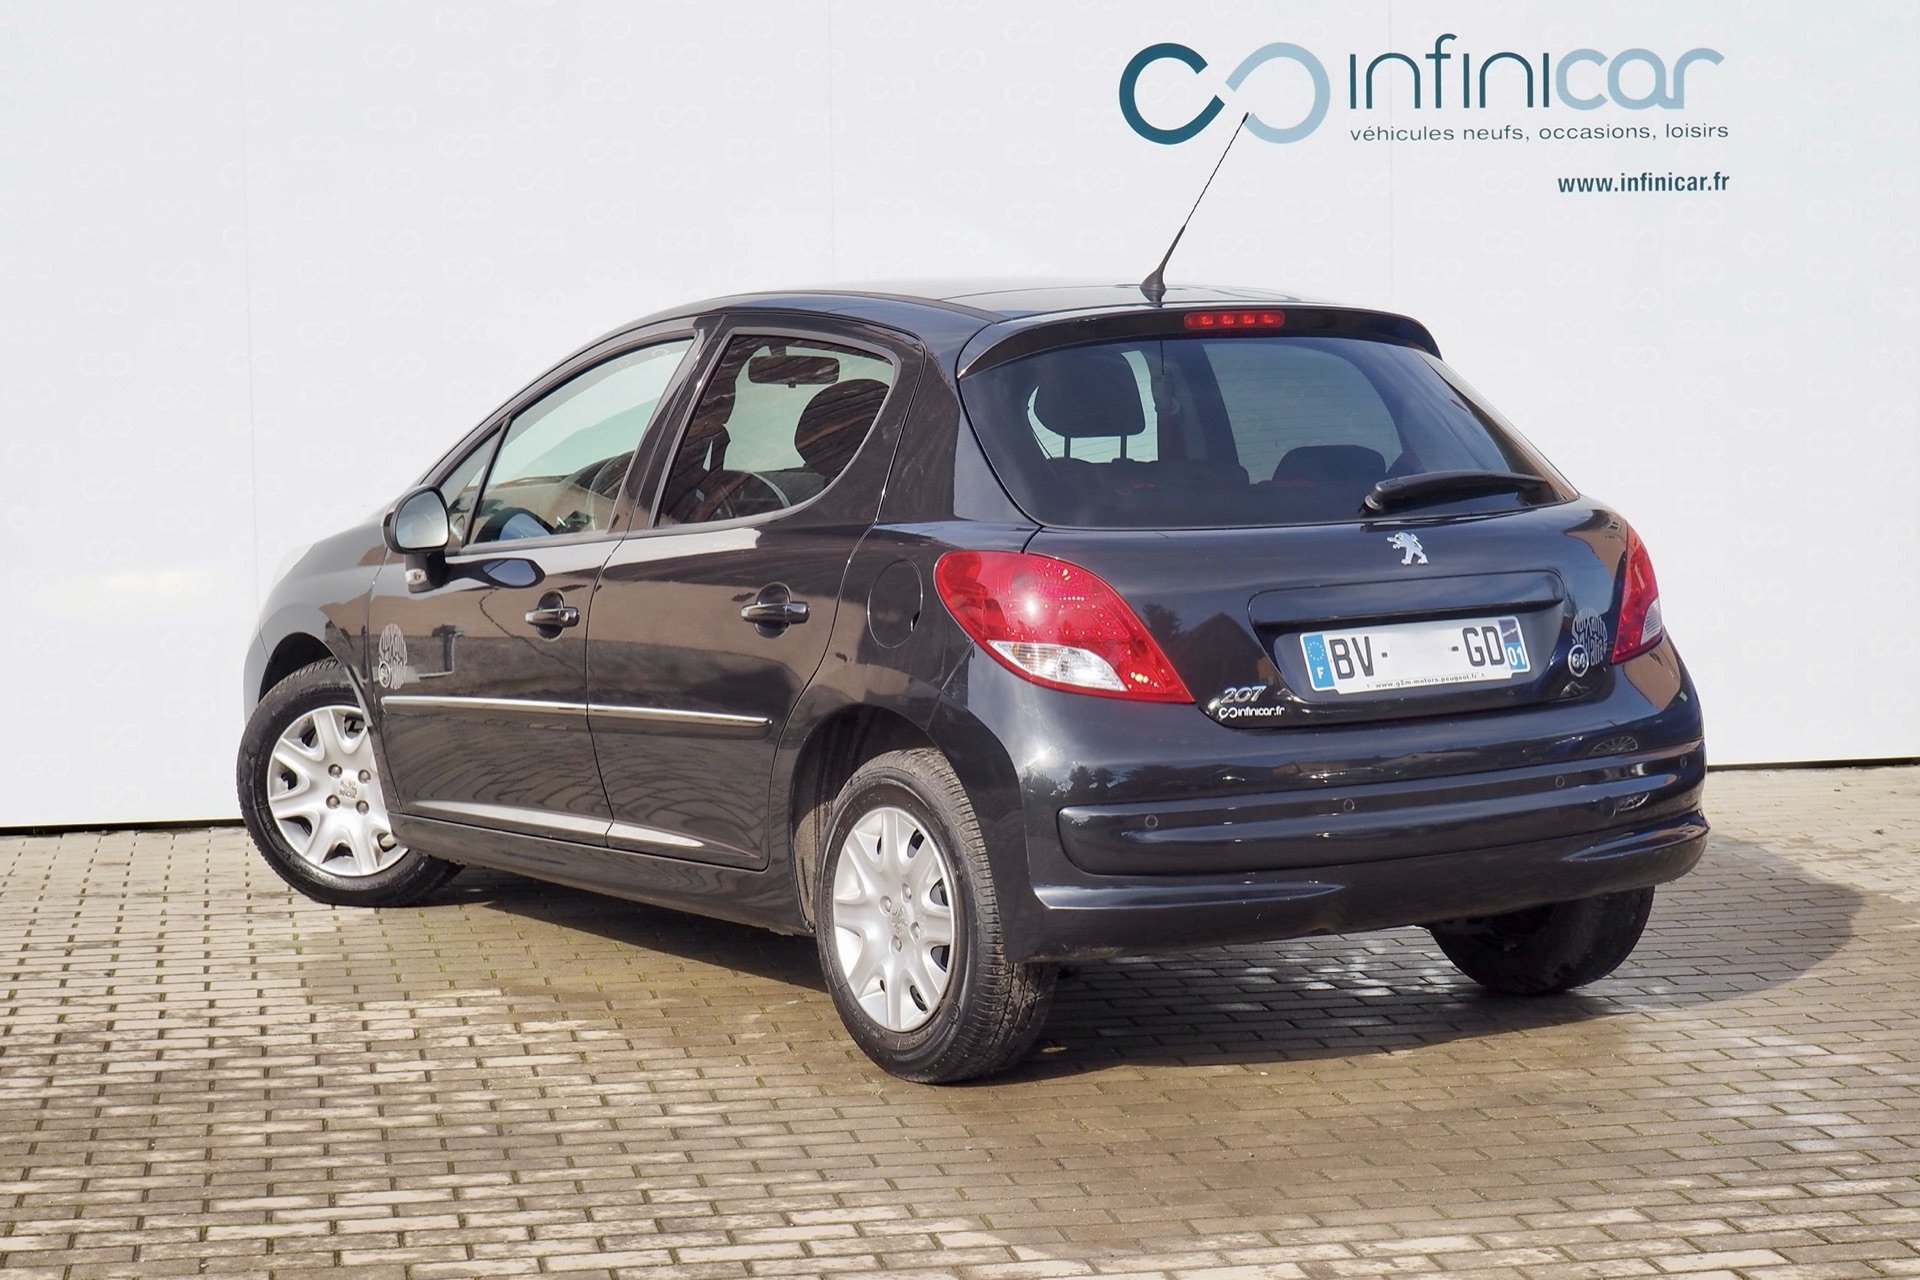 Peugeot  1,4 Vti 95 Série 64, 5 portes + Clim + Toit pano, 1ère Main – Garantie 12 mois  ** 56100km certifiés!!!! **